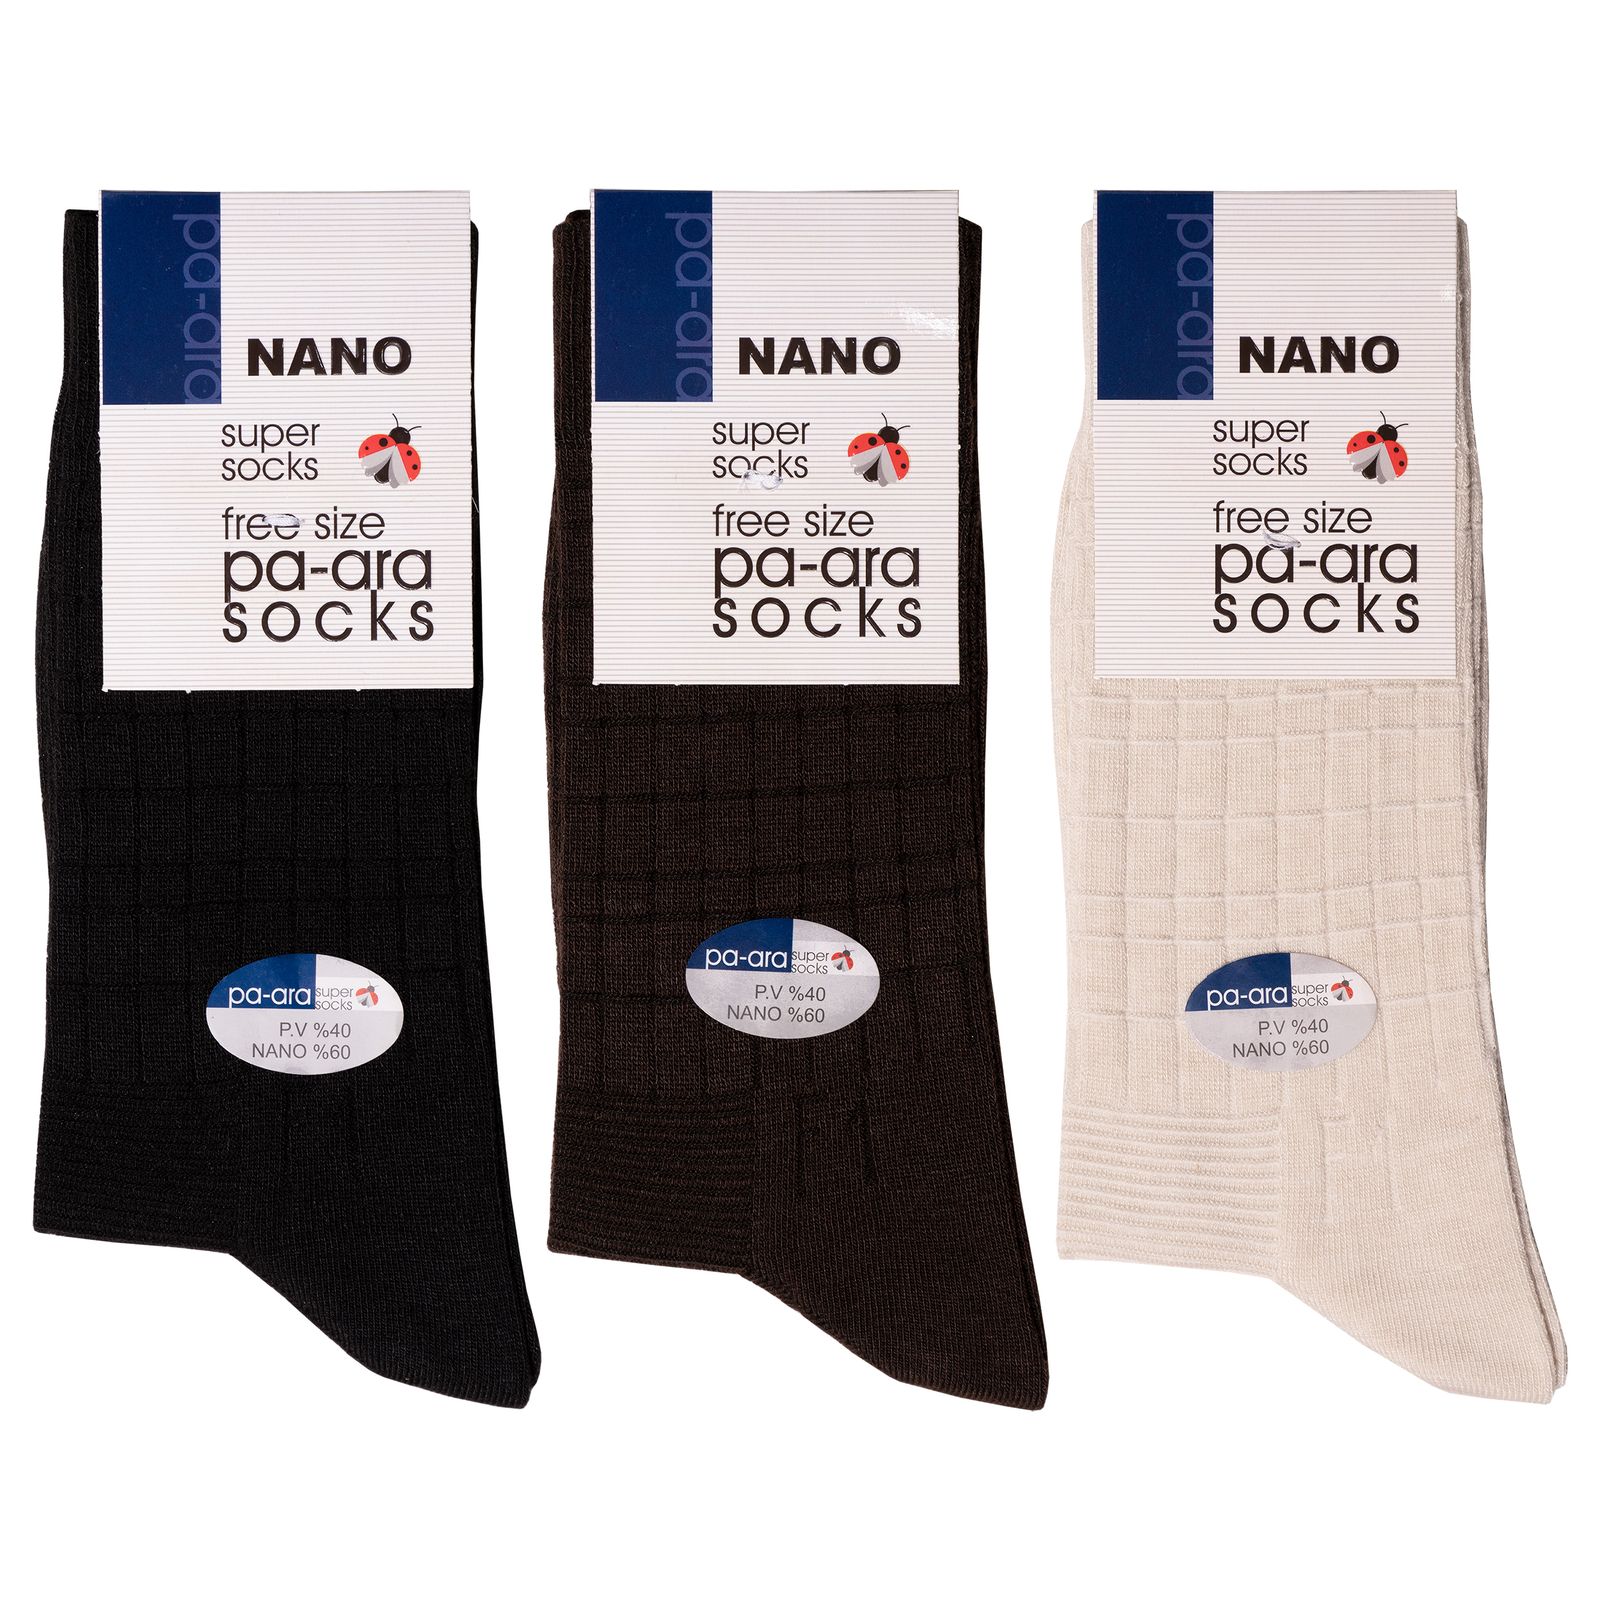 جوراب مردانه پاآرا مدل نانو 60 کد 6010 مجموعه 3 عددی -  - 1